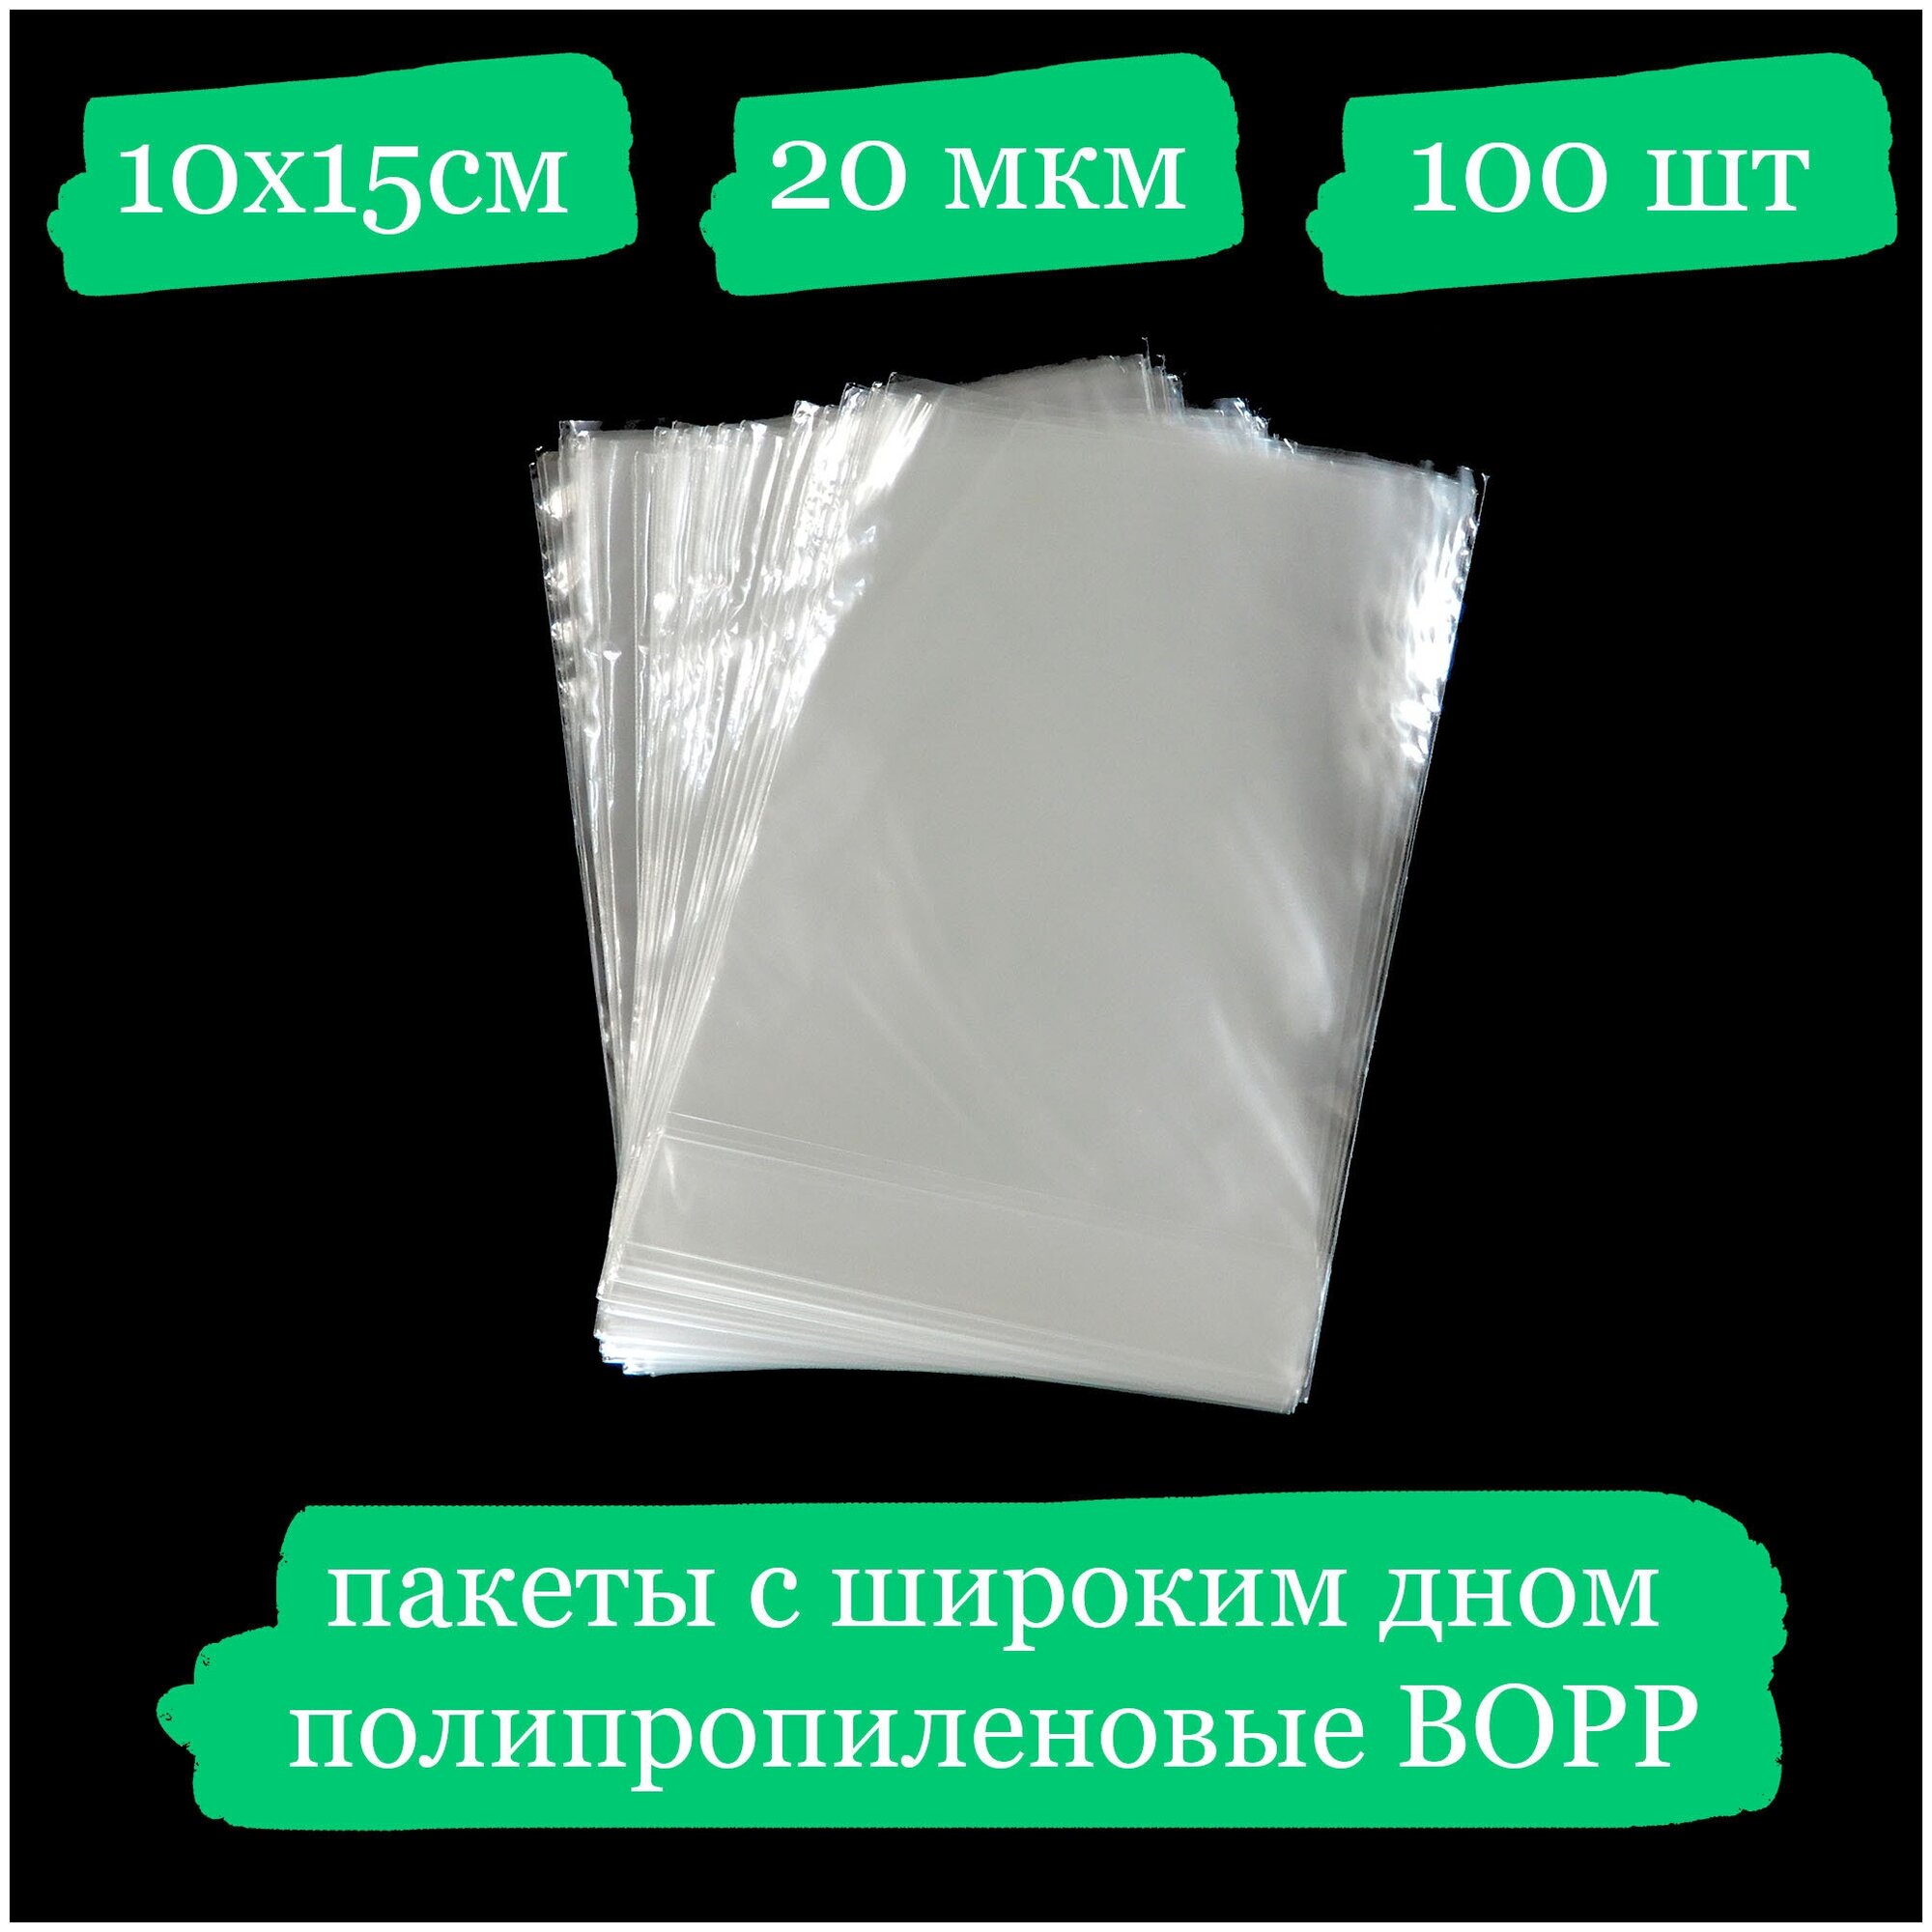 Полипропиленовые пакетики с широким дном - 10x15, 20 мкм - 100 шт.